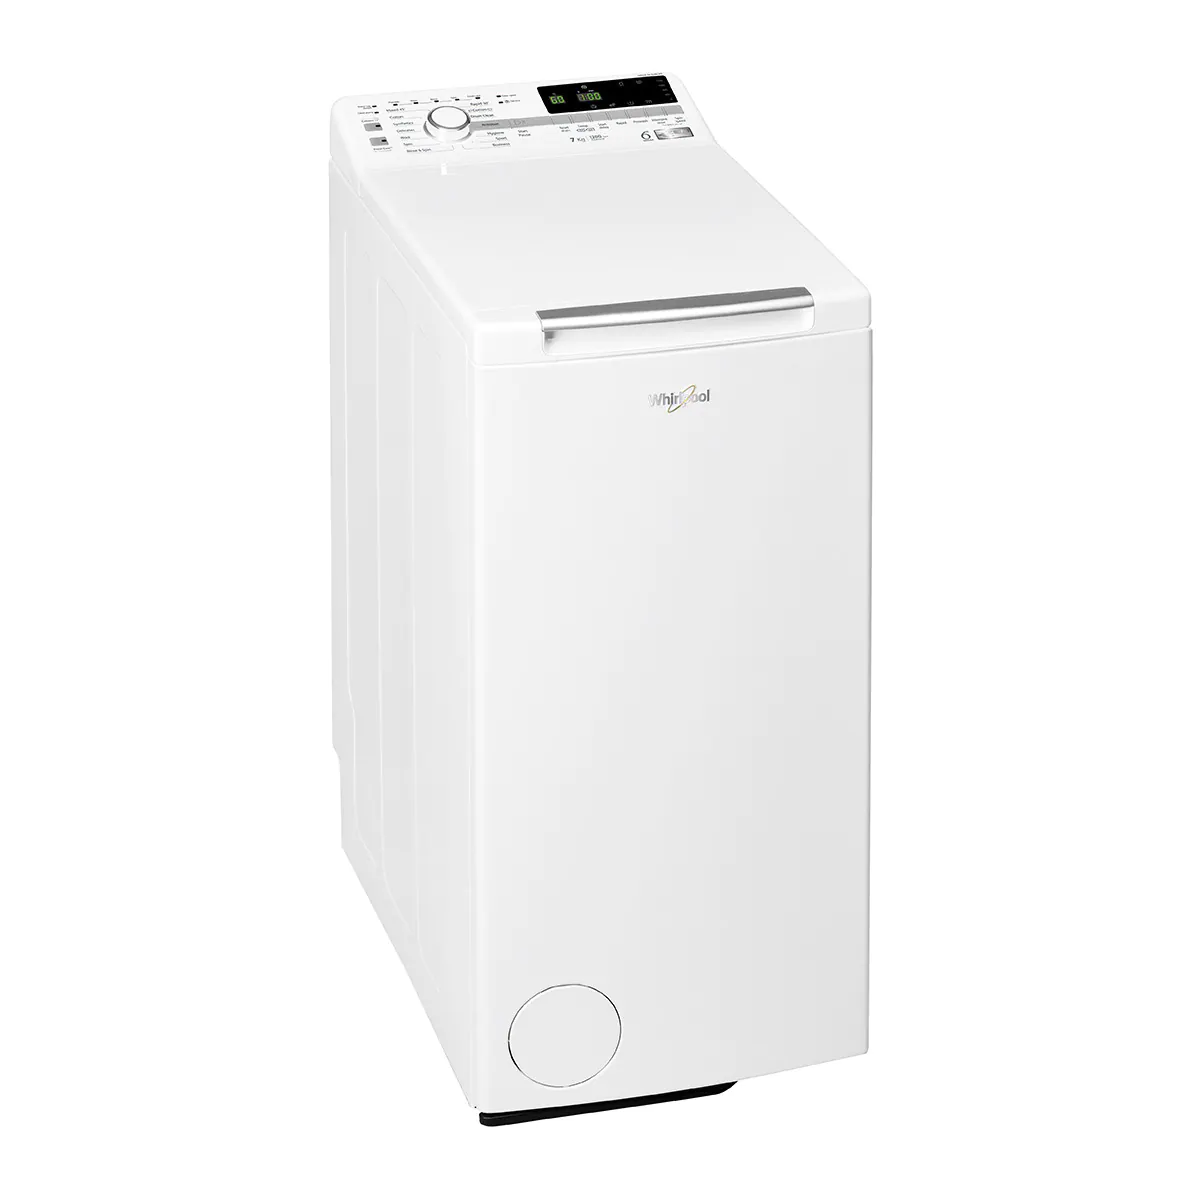 WHIRLPOOL 7KG 上置式洗衣機 TDLR70234